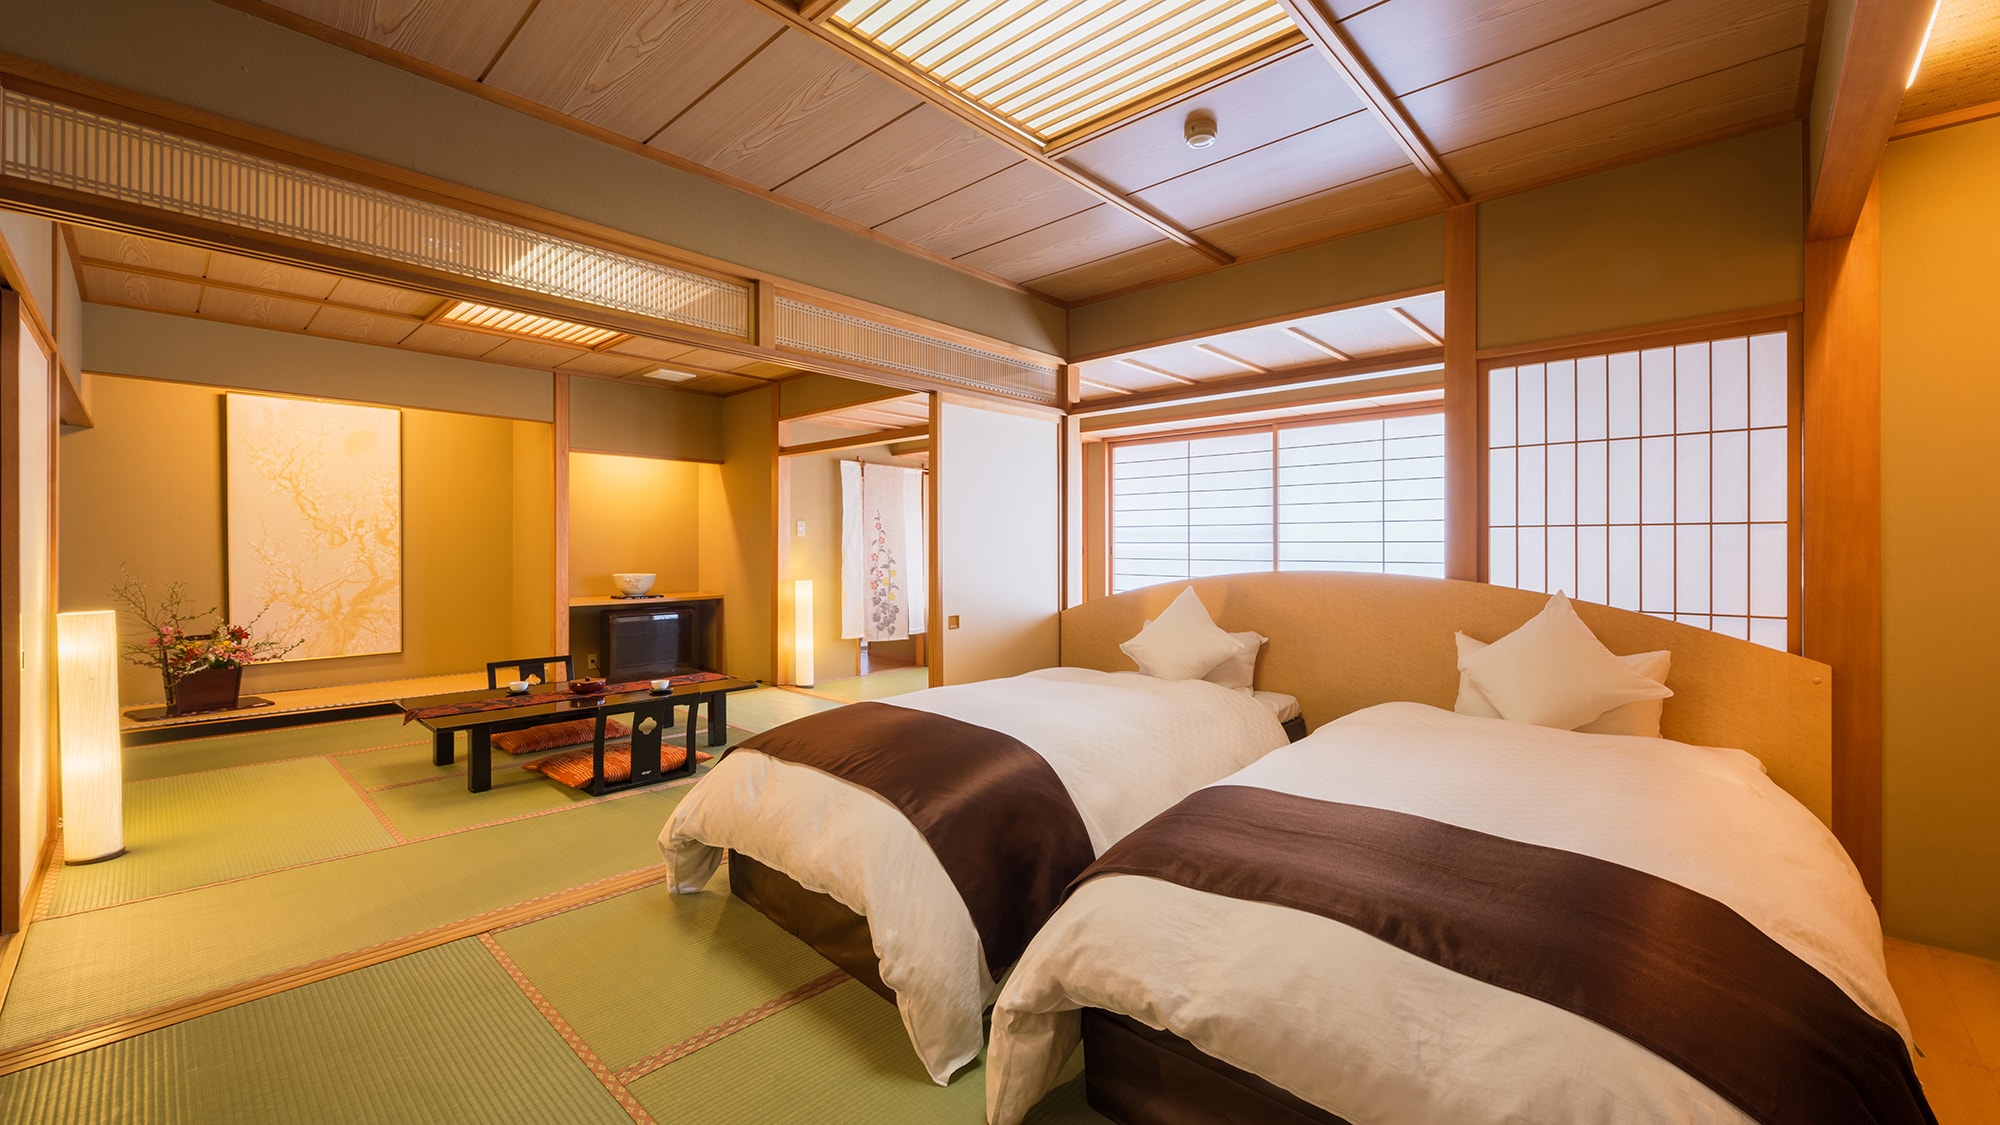 ■ 豪华日式房间A ■ 两间宽敞的房间（14 张榻榻米）。